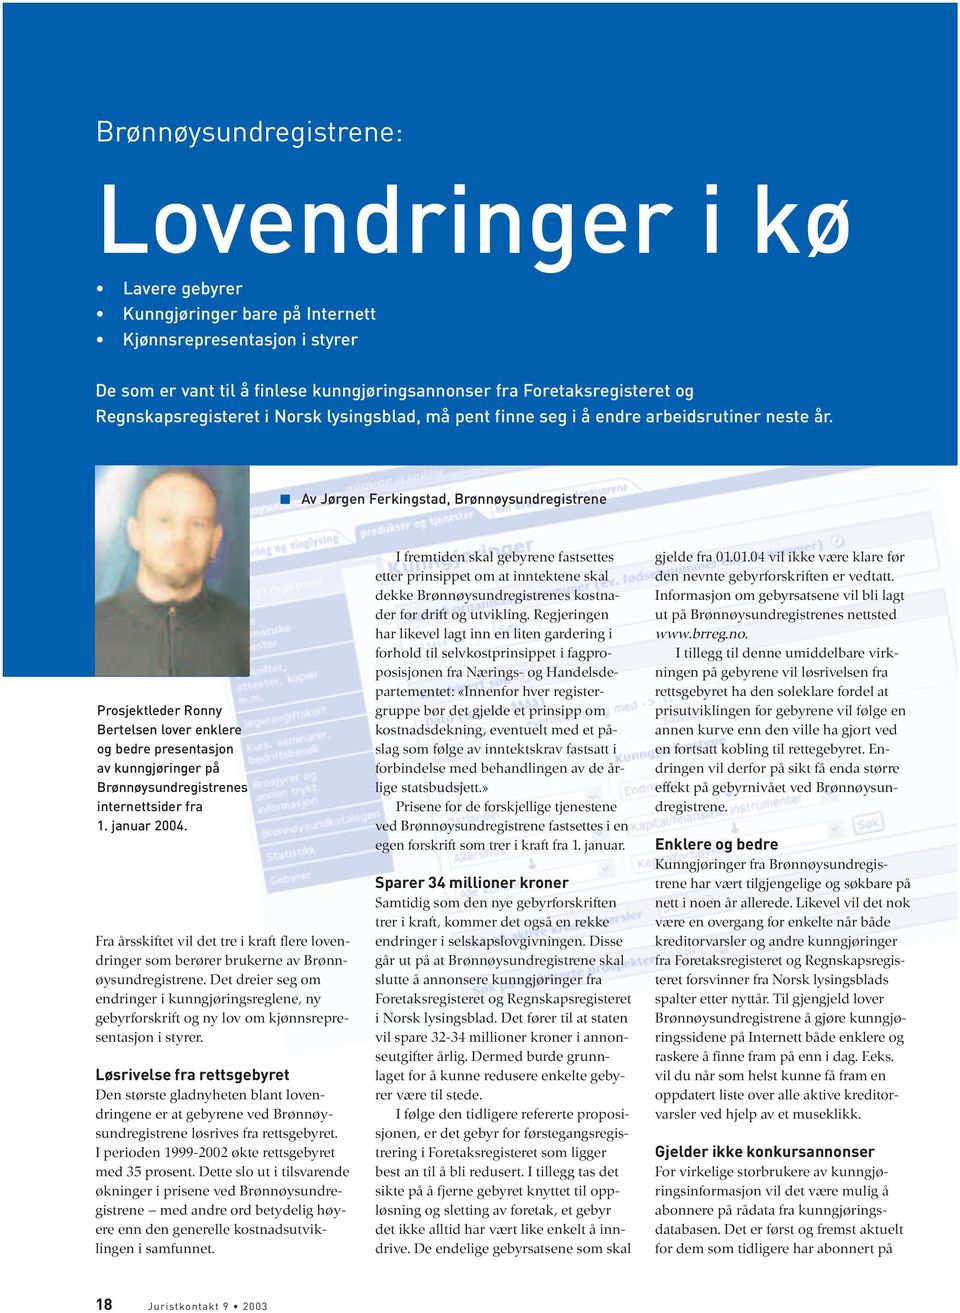 Av Jørgen Ferkingstad, Brønnøysundregistrene Prosjektleder Ronny Bertelsen lover enklere og bedre presentasjon av kunngjøringer på Brønnøysundregistrenes internettsider fra 1. januar 2004.